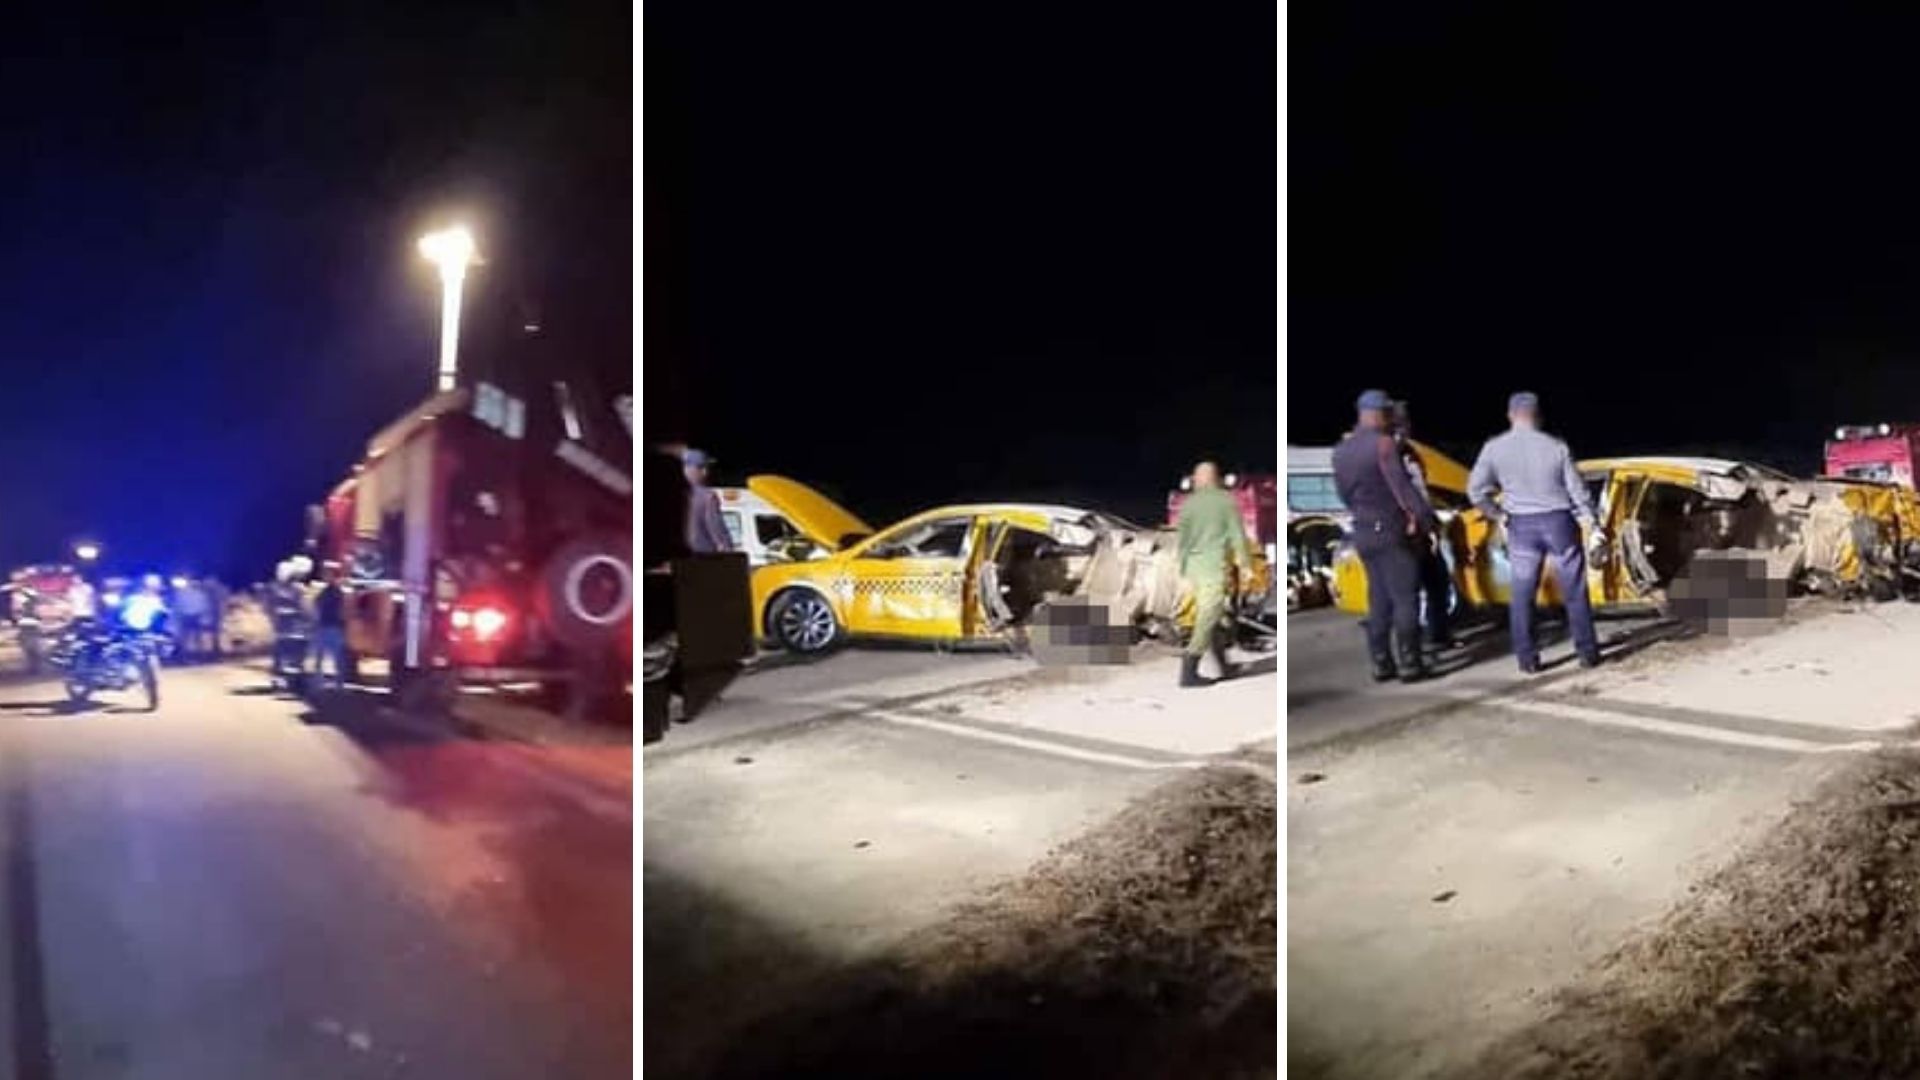 Accidente ocurrido en diciembre en carretera entre Boca de Camarioca y Carboneras. Imagen de referencia